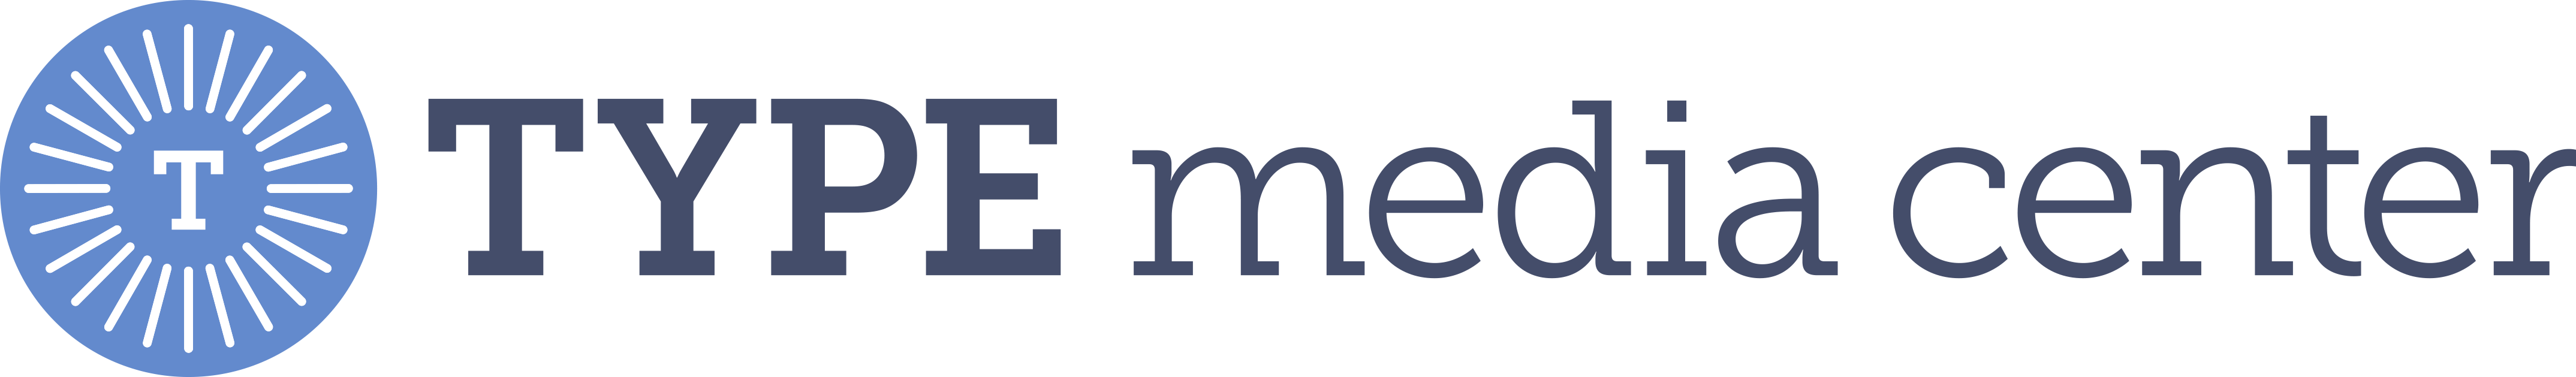 Type Media Center logo